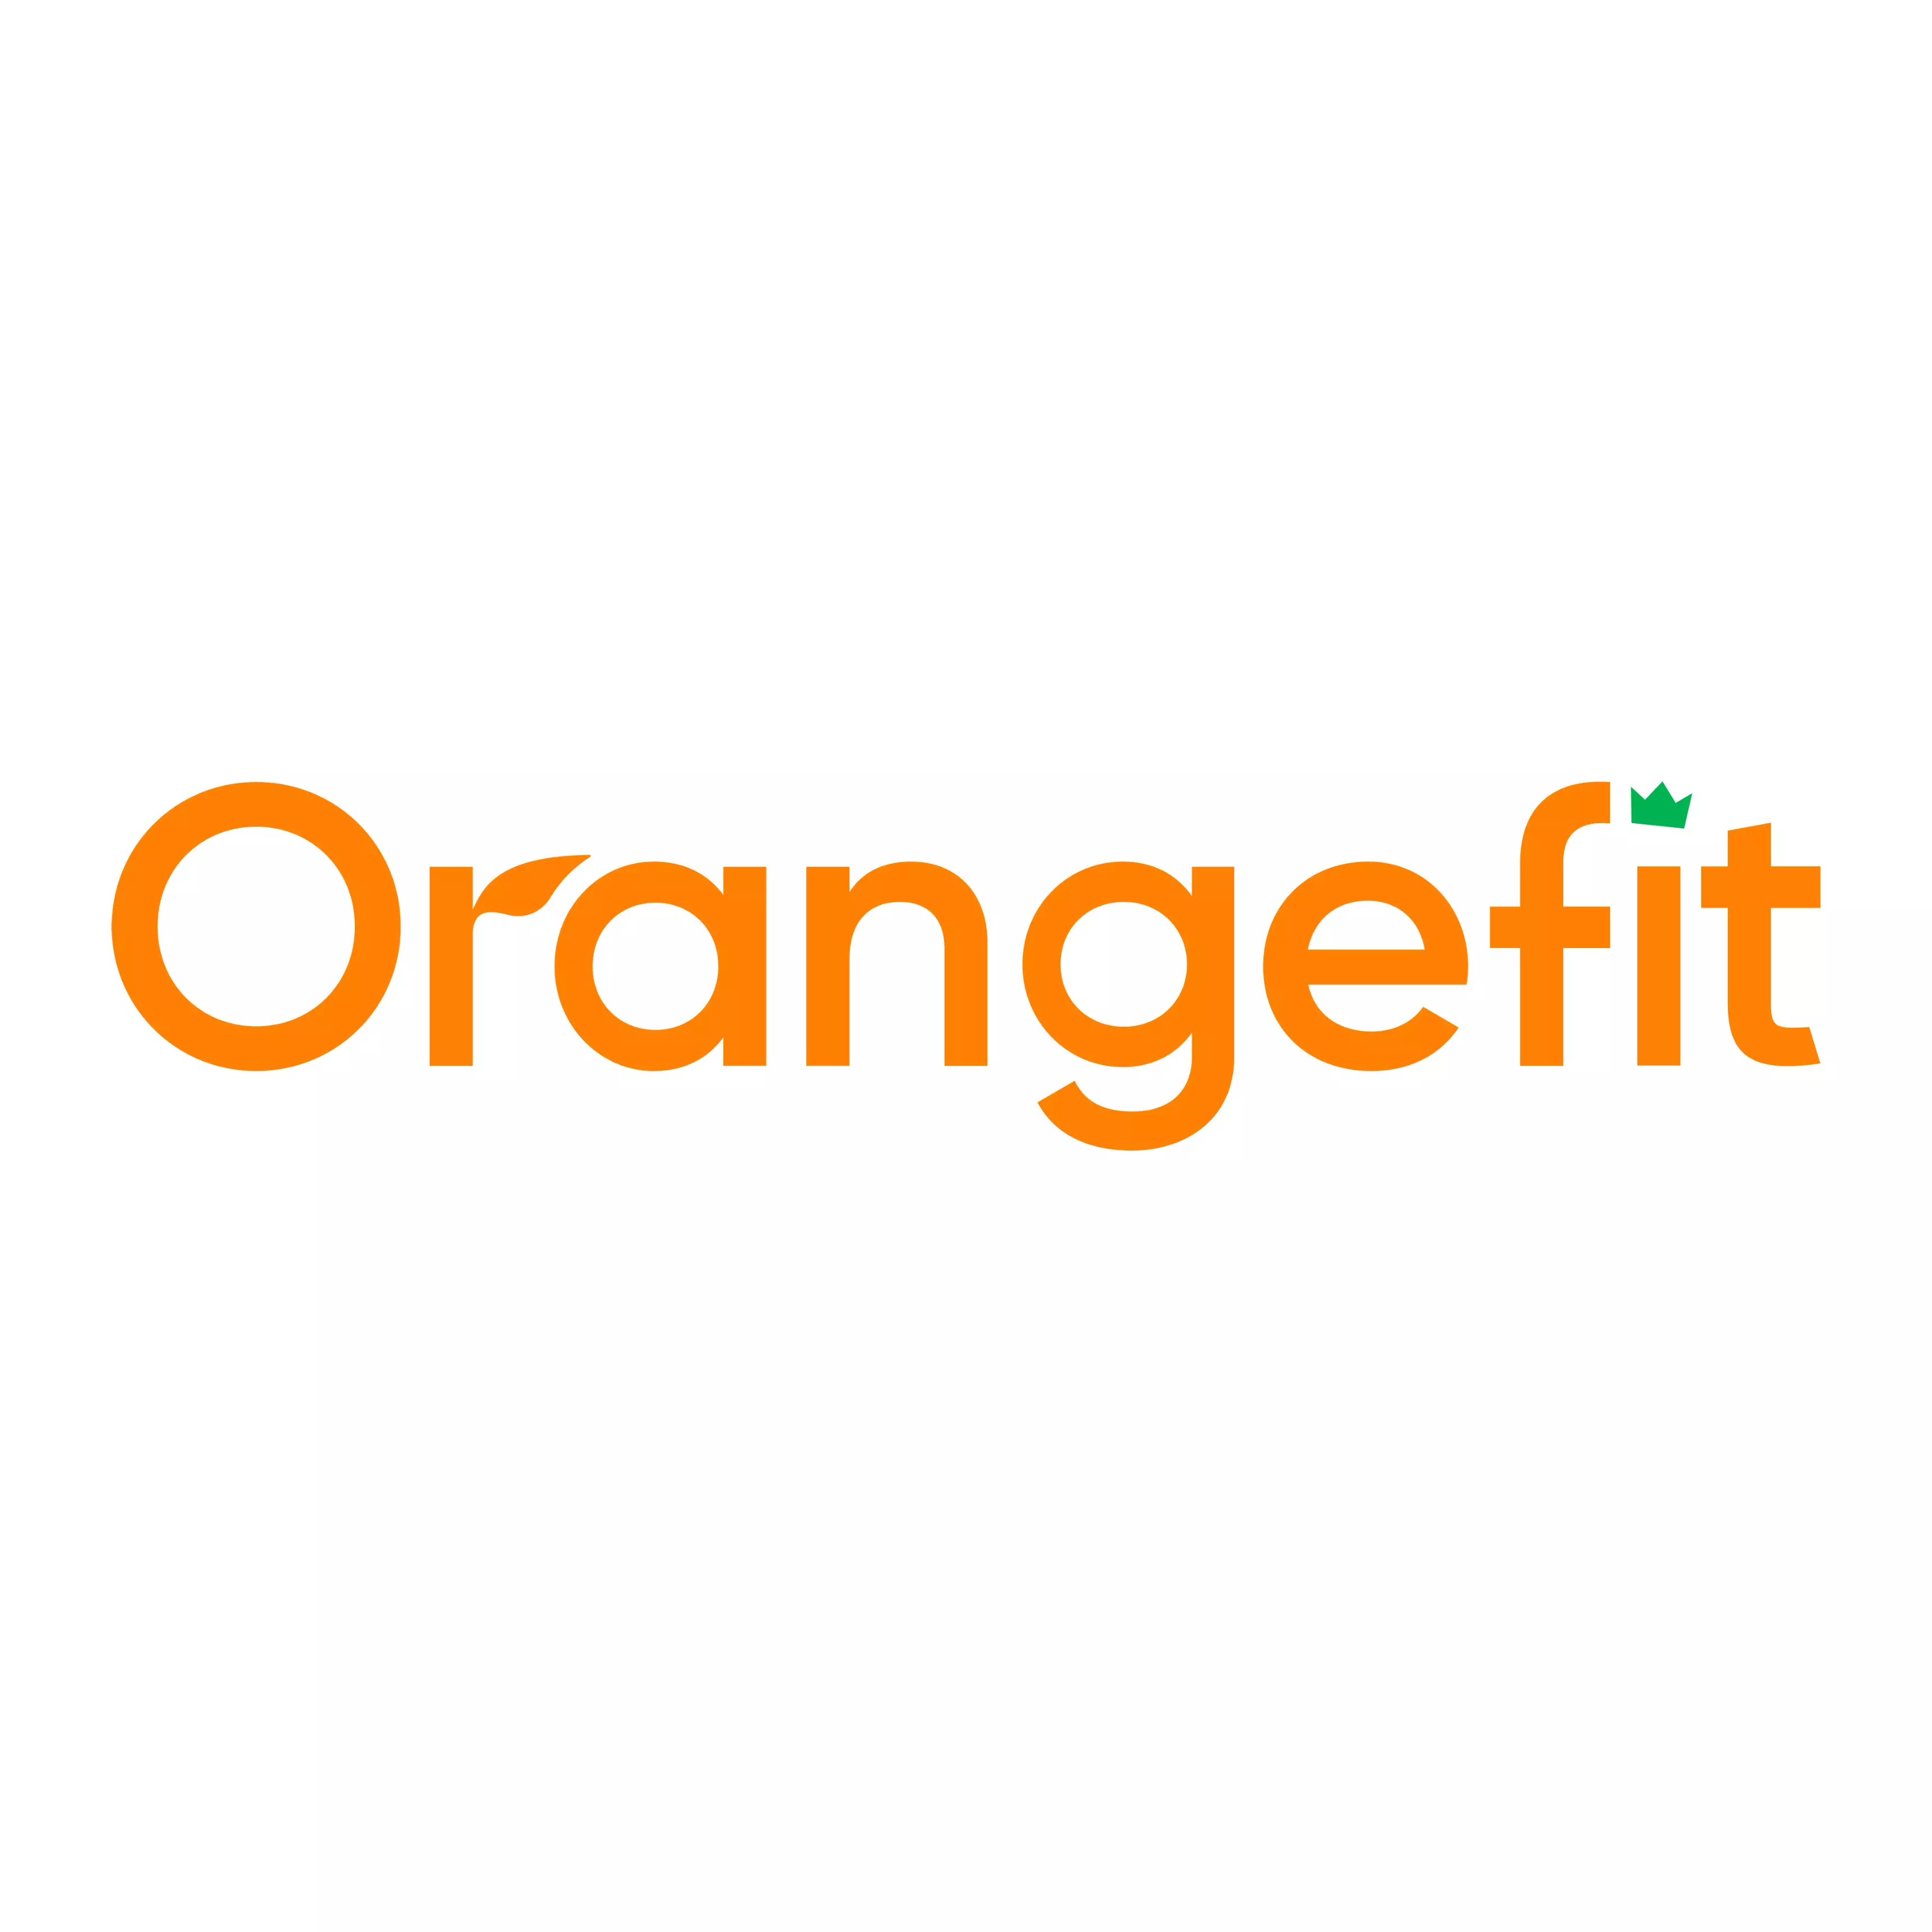 Orangefit